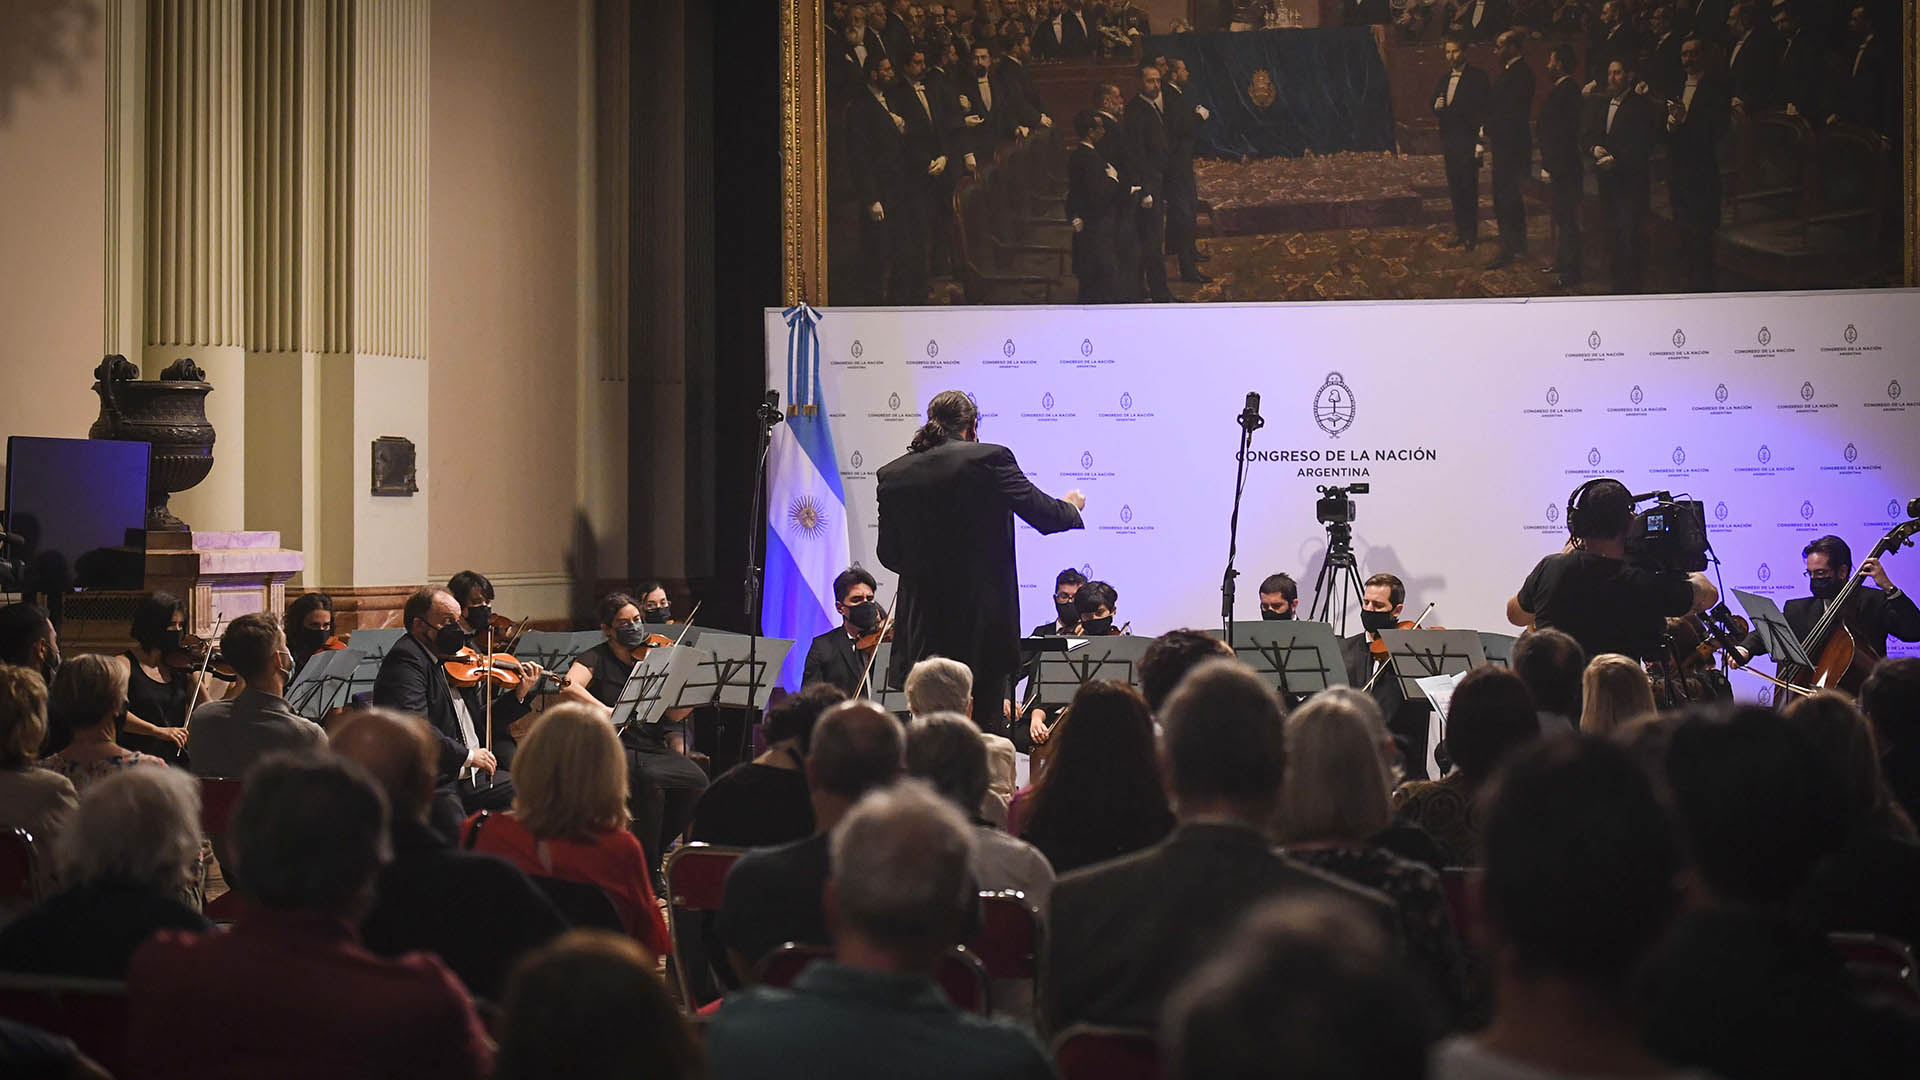 La Orquesta del Congreso abre su temporada de conciertos con un homenaje a Mozart